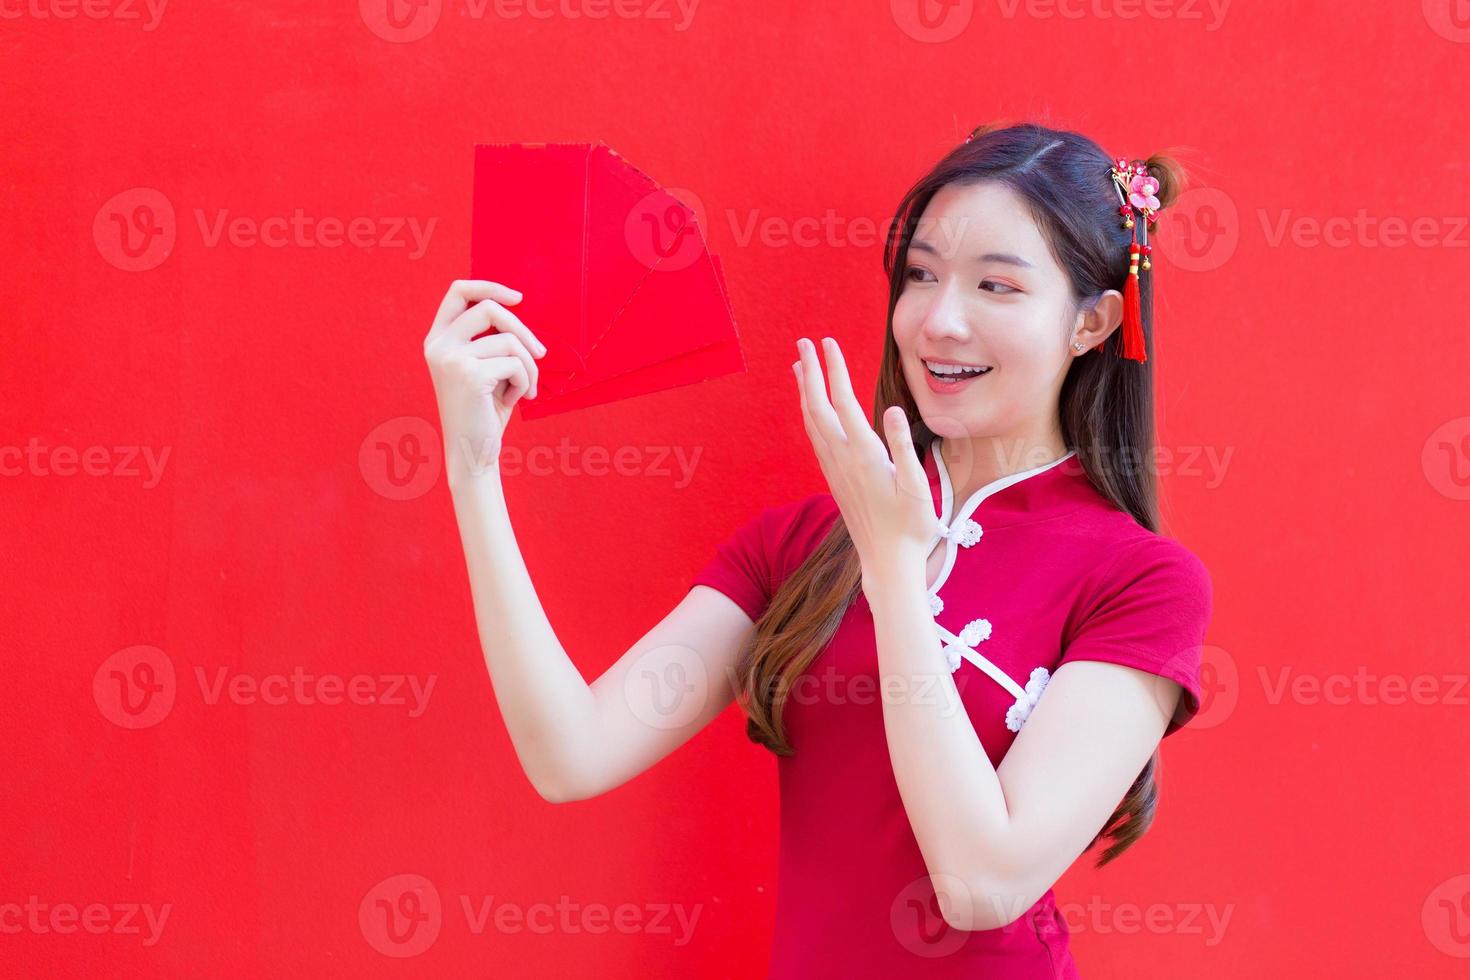 hermosa mujer asiática usa un cheongsam rojo y sostiene sobres rojos mientras mira a la cámara y sonríe alegremente con el fondo rojo. foto